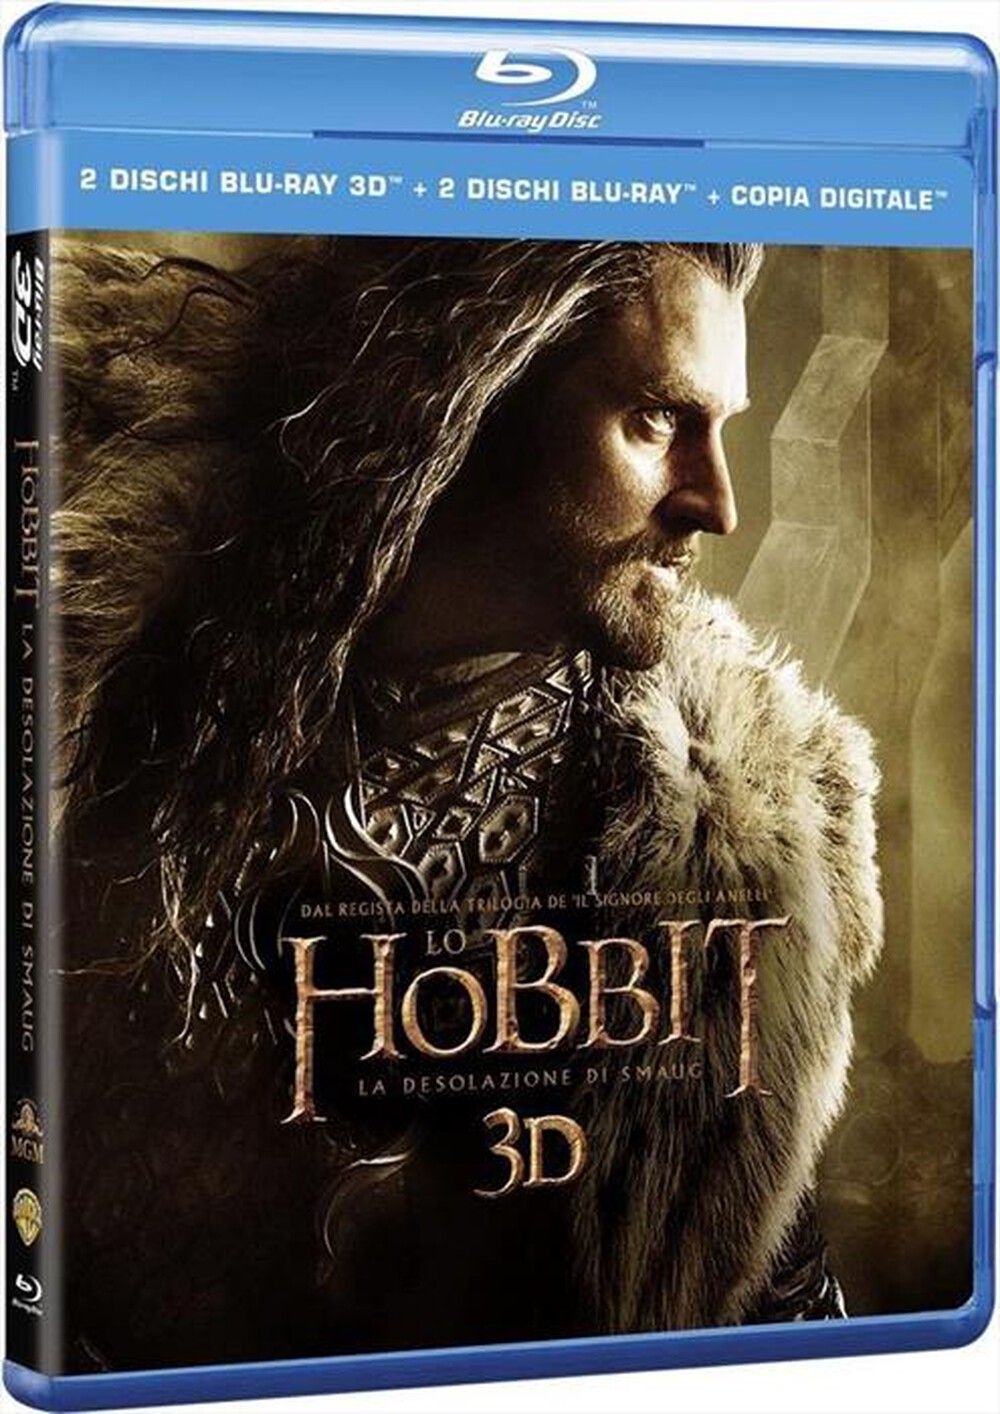 "WARNER HOME VIDEO - Hobbit (Lo) - La Desolazione Di Smaug (3D) (2 Bl"